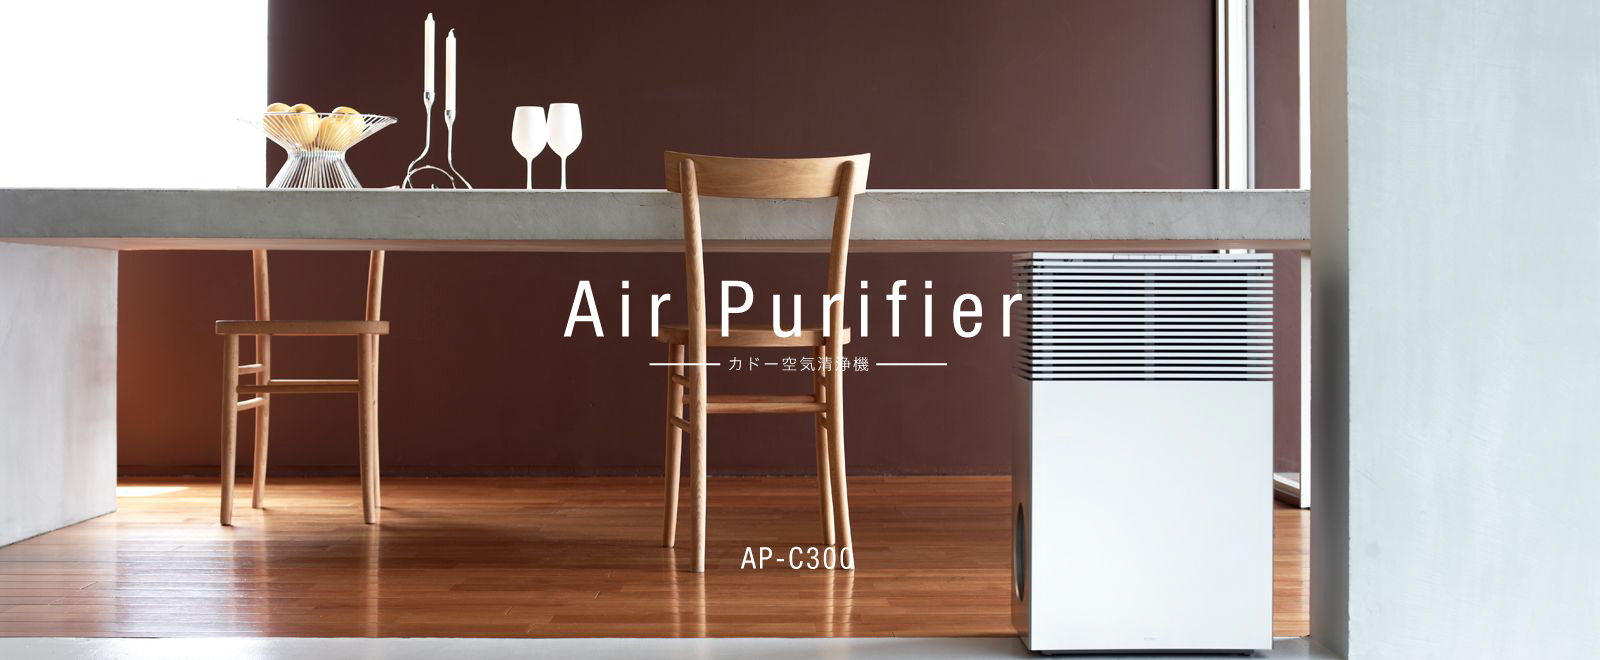 cado Air Purifier